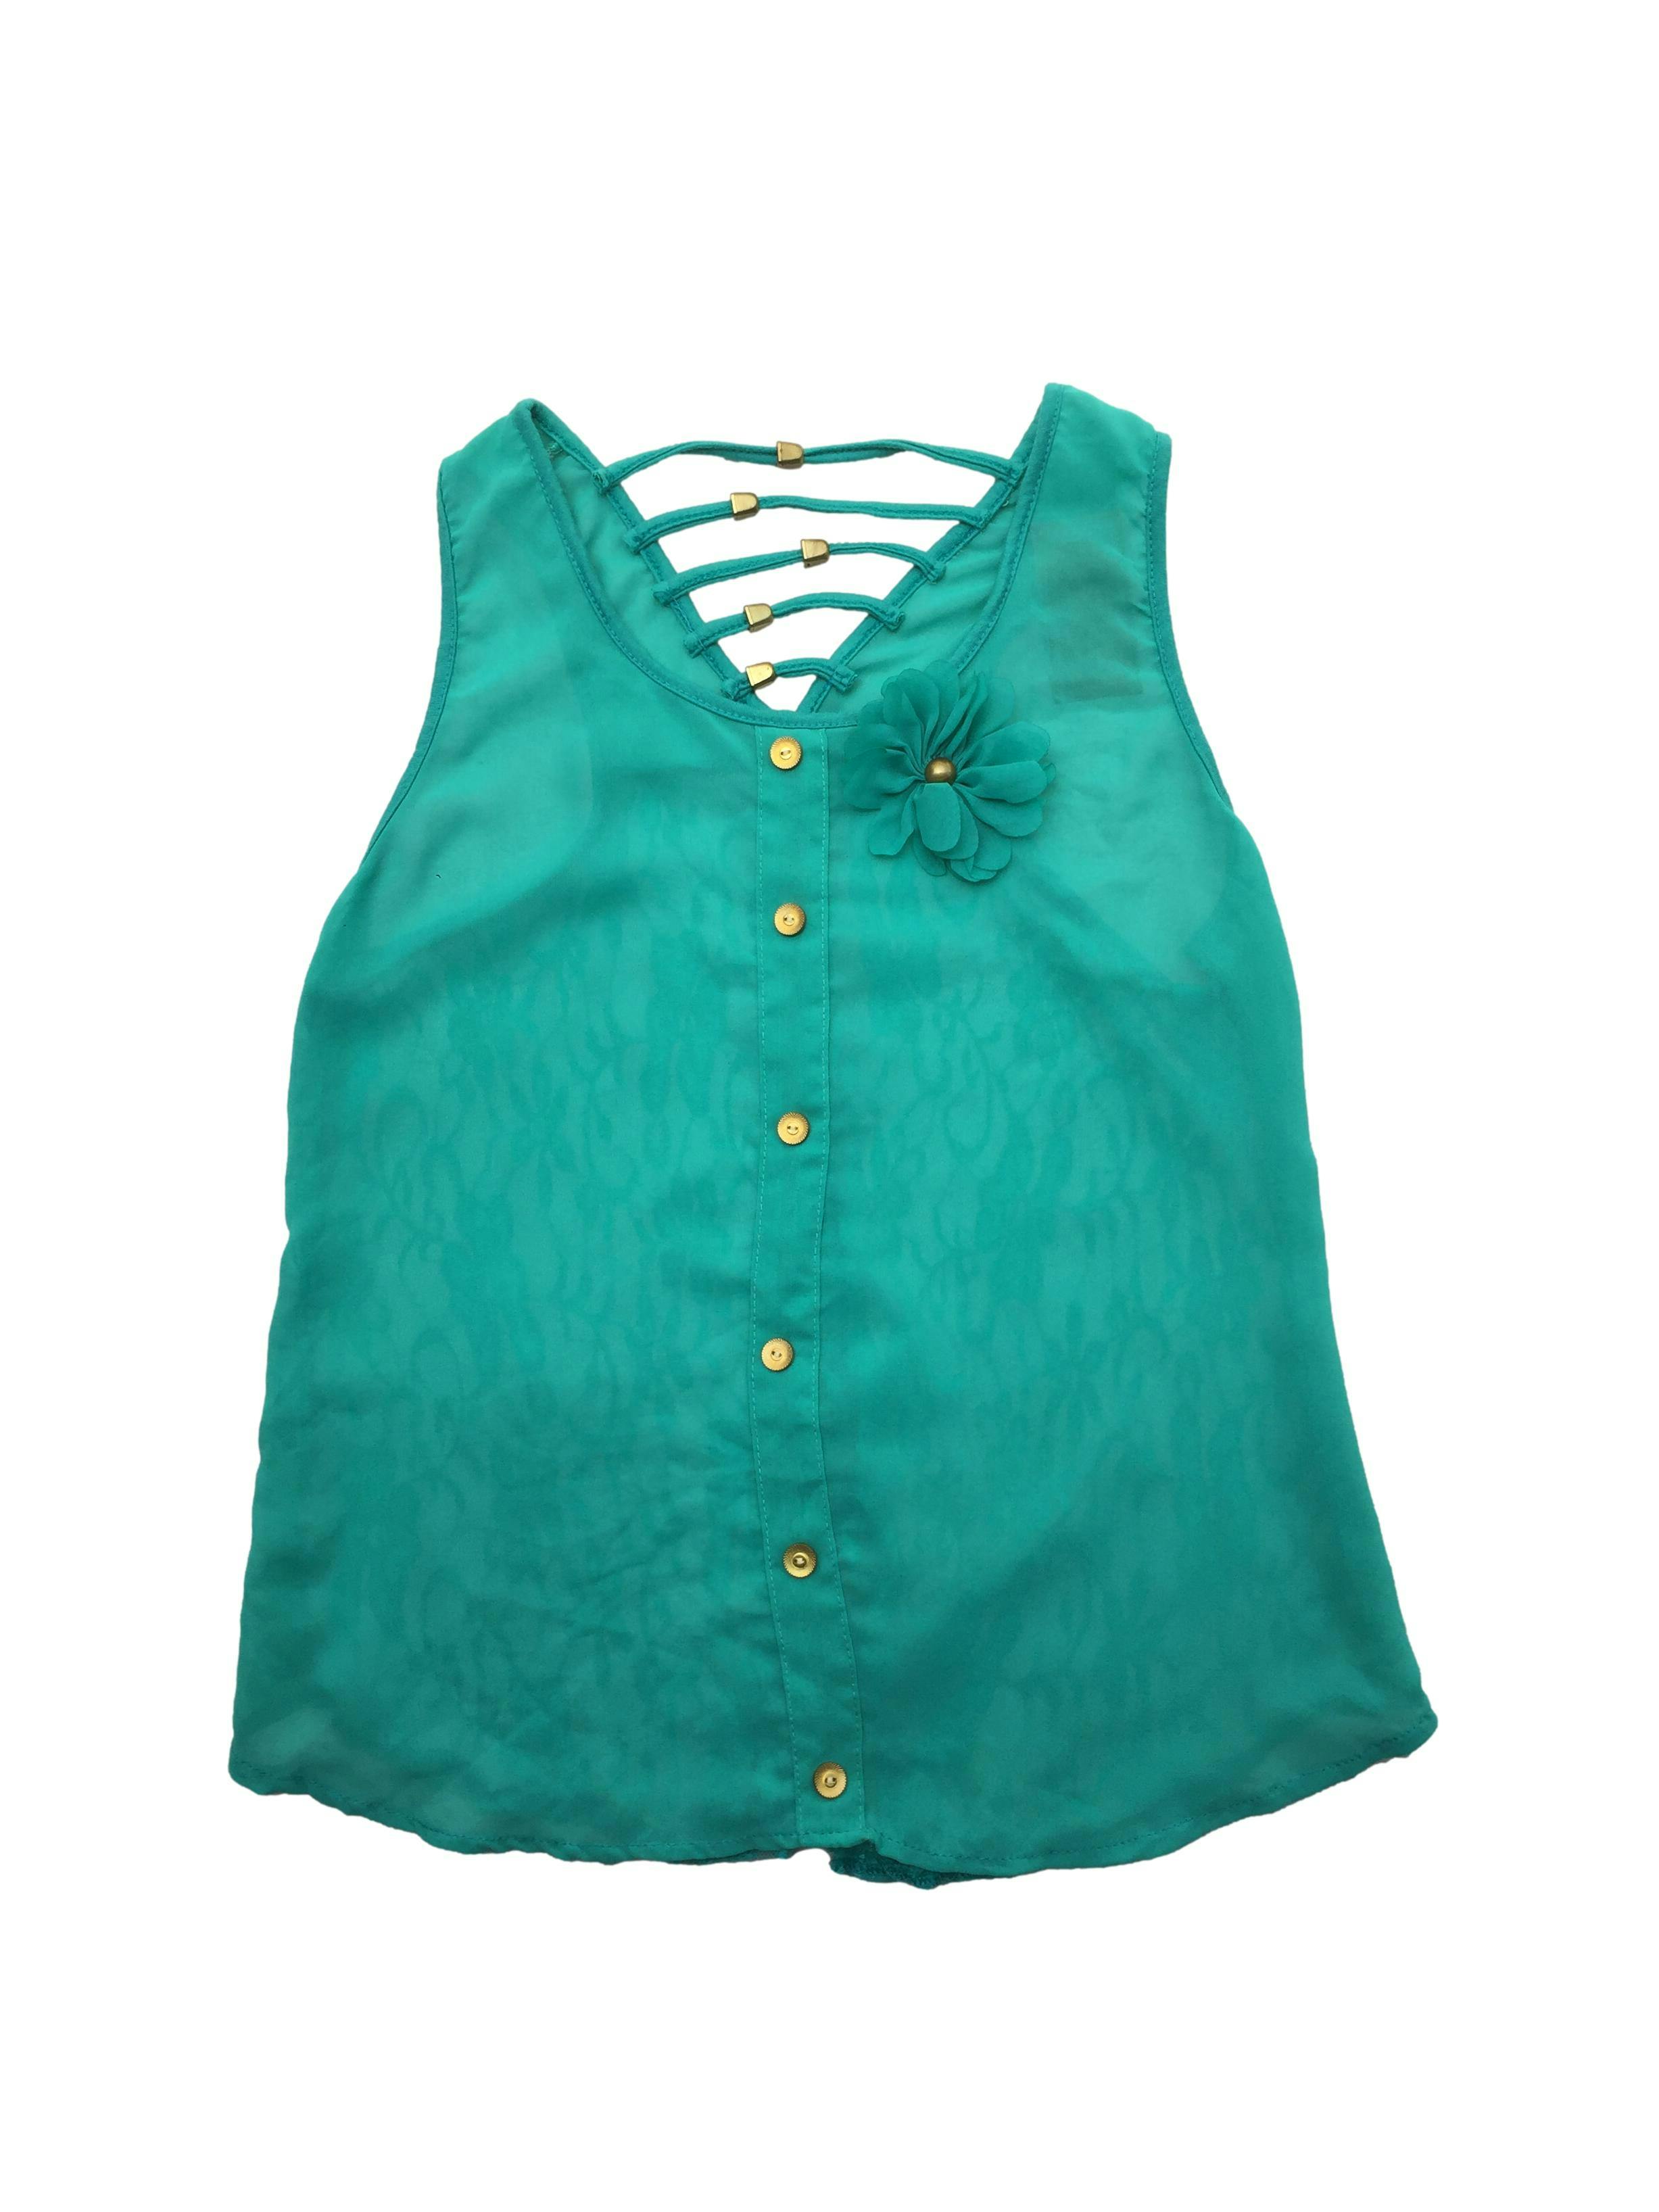 Blusa verde agua de gasa con aplicación de botones y flor, espalda de encaje con rejilla en escote. Busto 90cm, Largo 52cm.